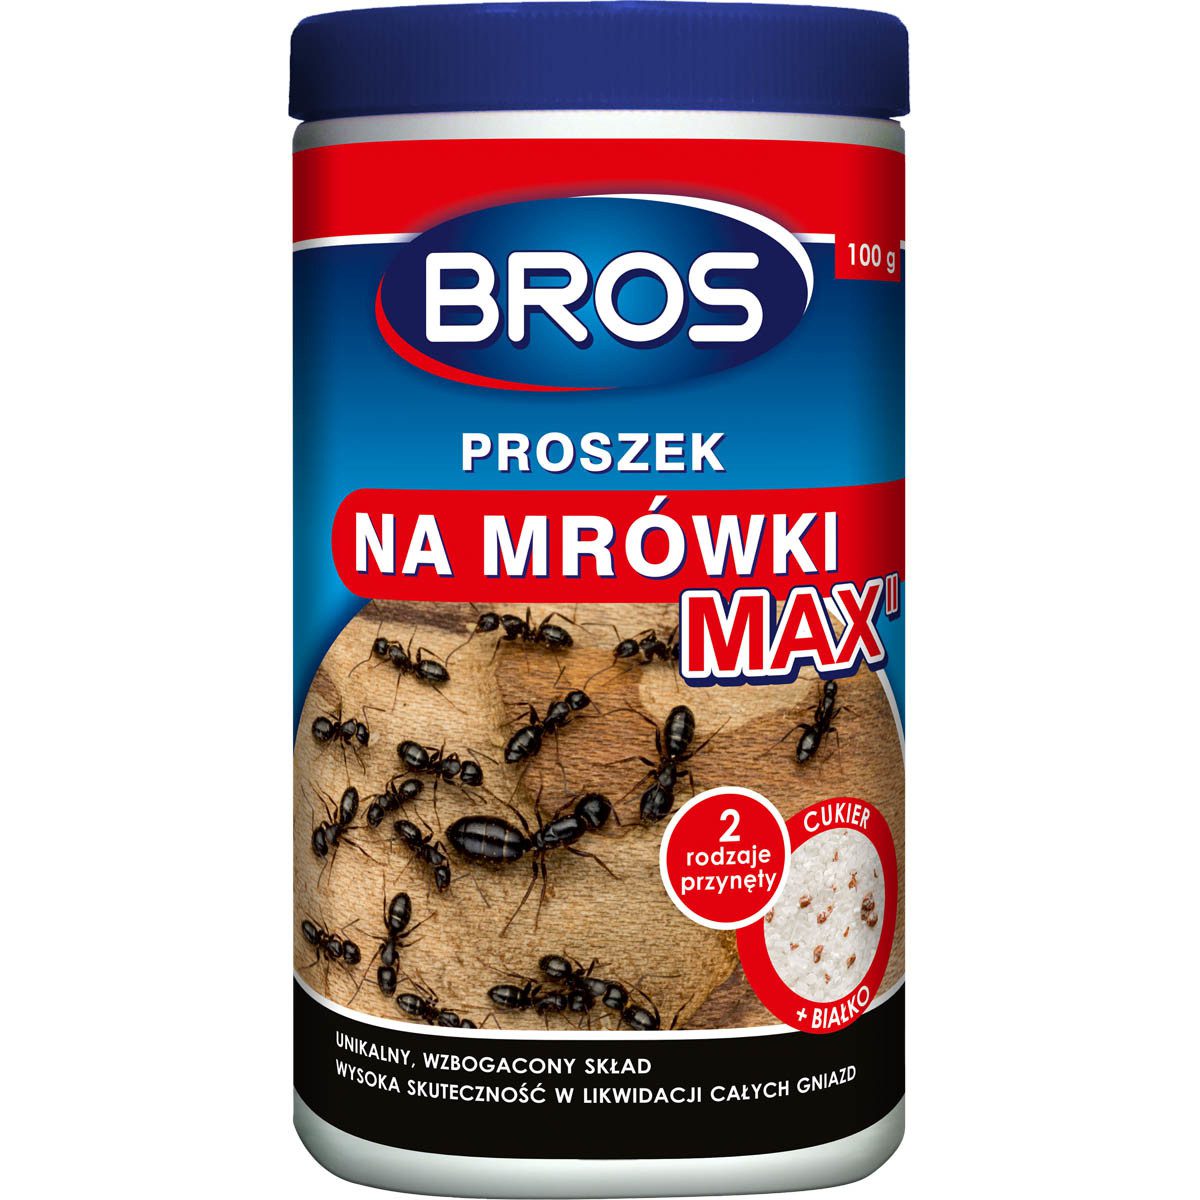 Bros Proszek na mrówki MAX 100g